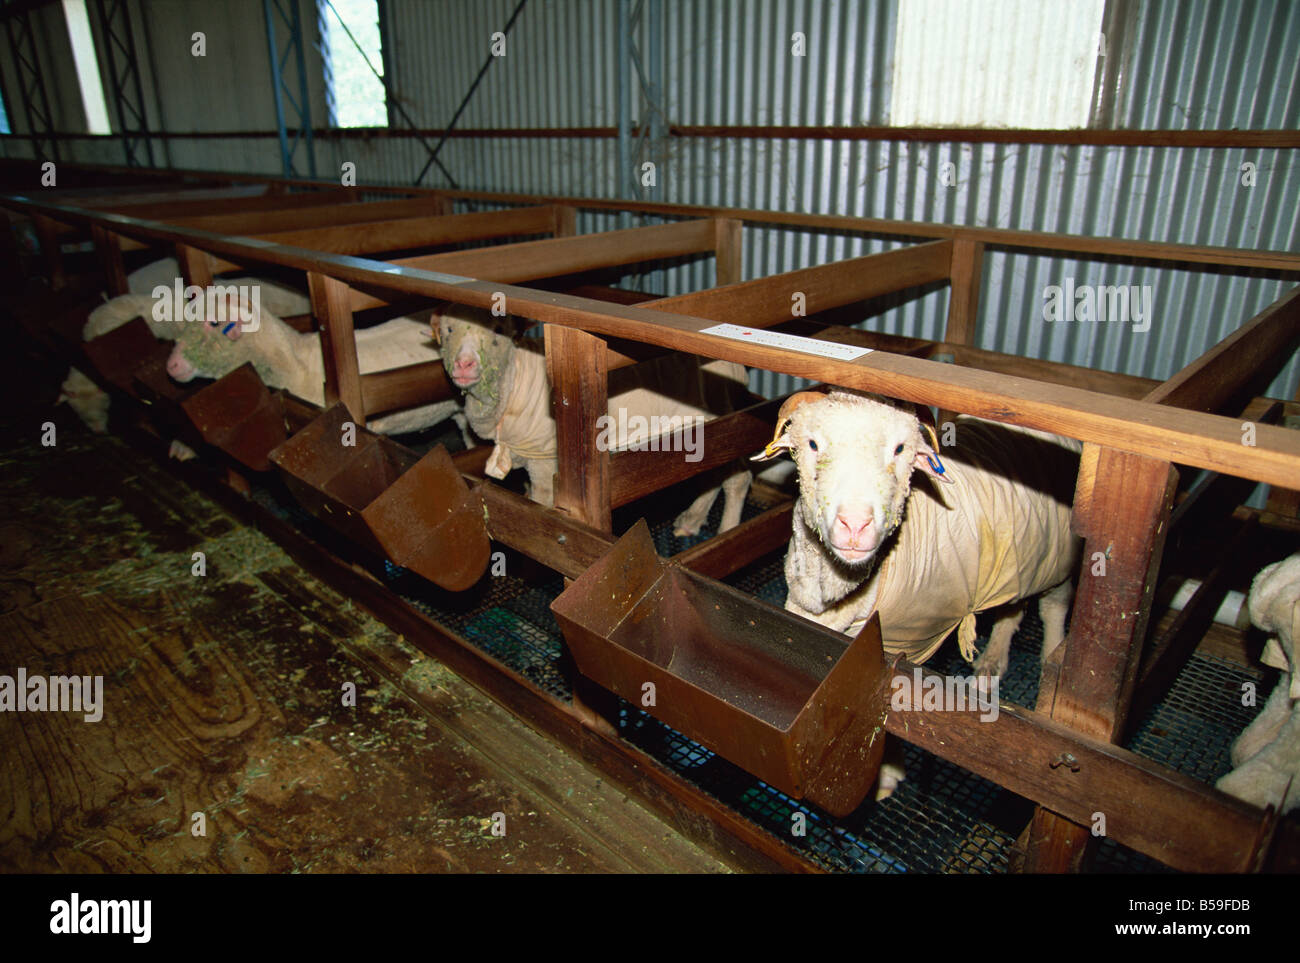 Les moutons gardés à l'intérieur de produire de la laine plus fine à l'usine de laine de Wimmera, un projet communautaire à Horsham, Victoria, Australie Banque D'Images